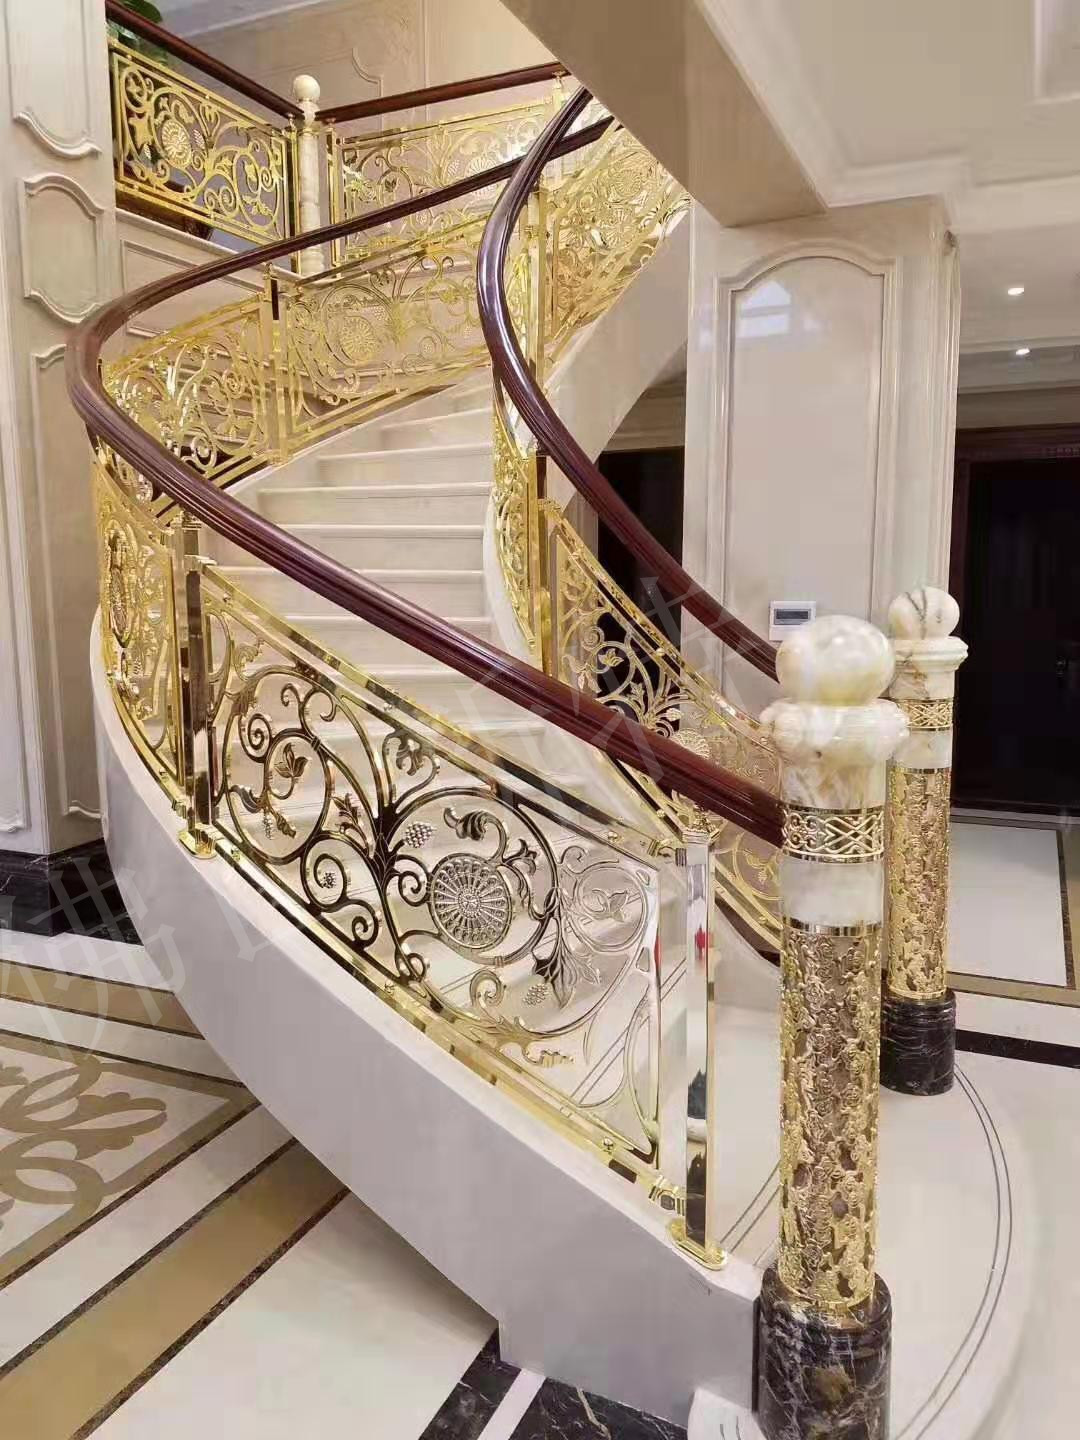 欧式镜面金色铝雕花图案楼梯护栏富丽堂皇